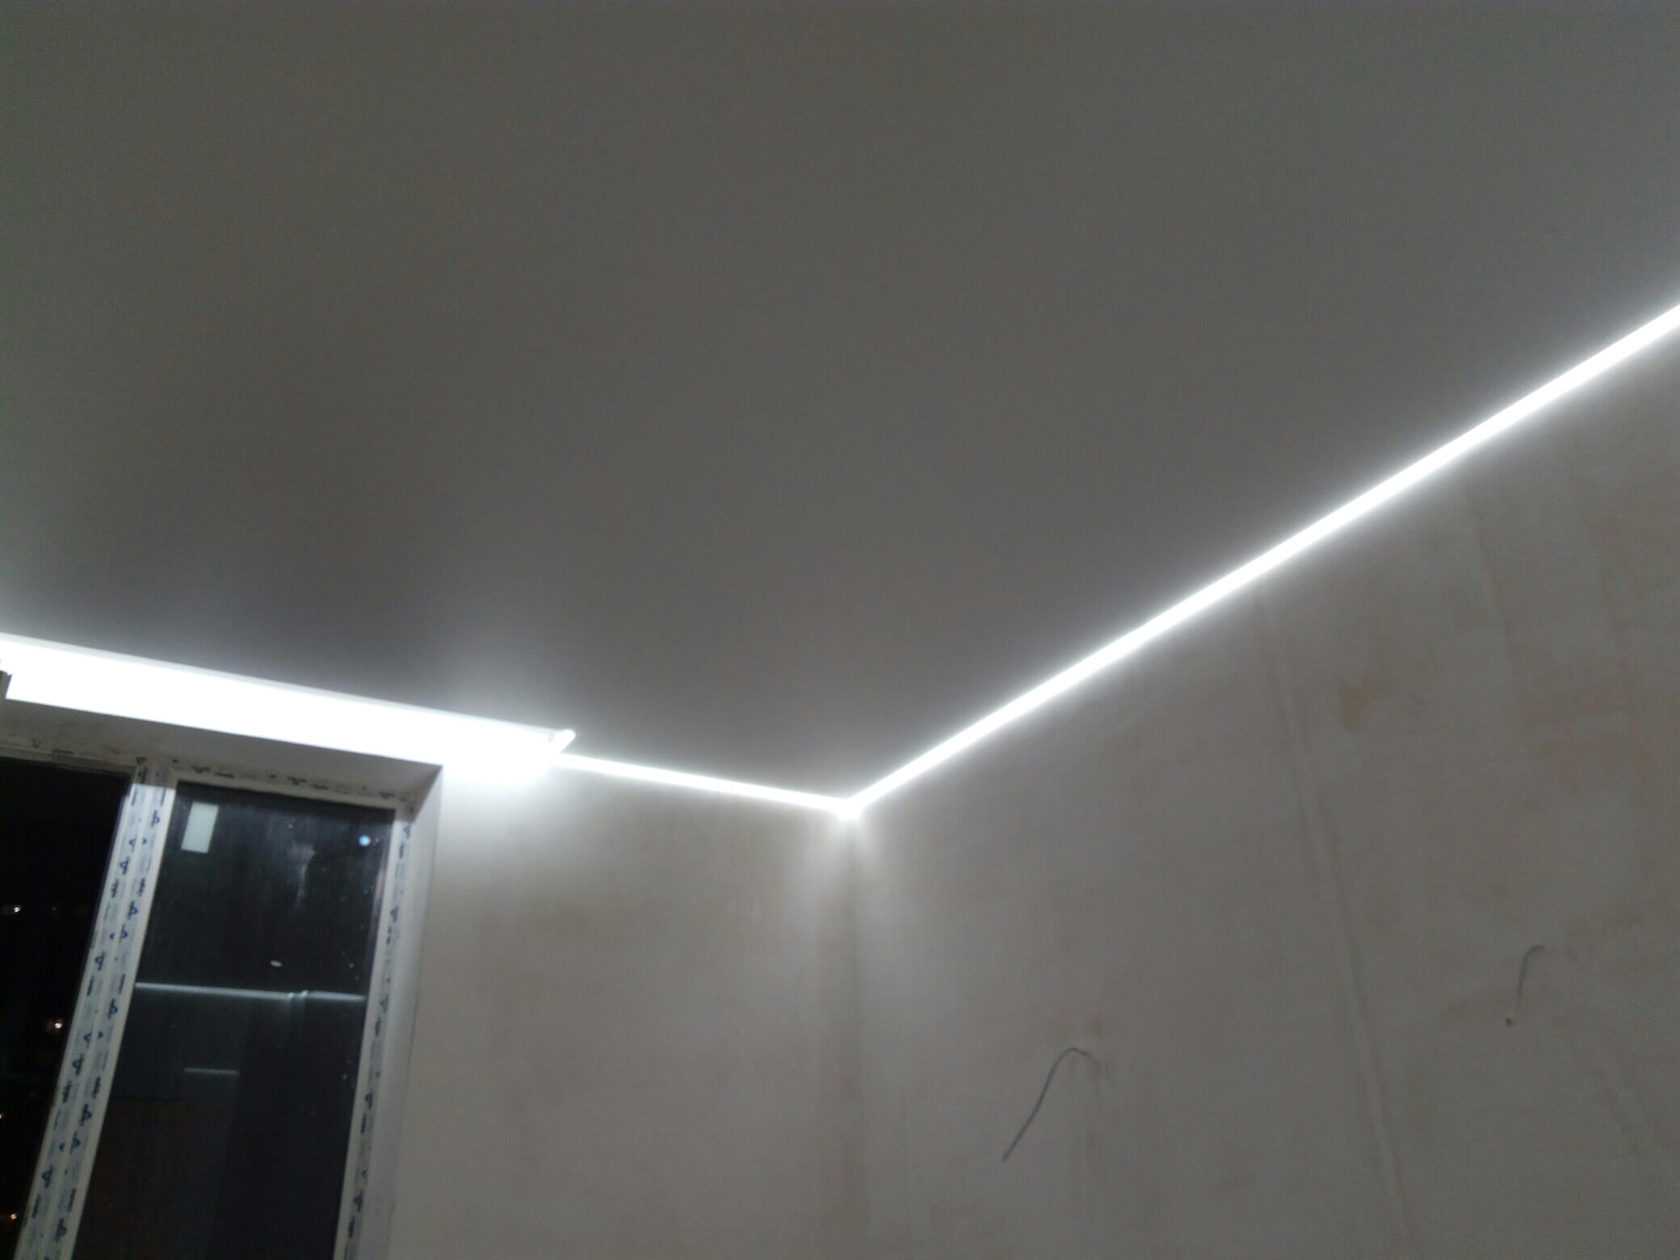 Парящий потолок (66 фото): что это такое, натяжные потолки нового поколения с подсветкой по периметру, парящие линии в дизайне конструкций, отзывы